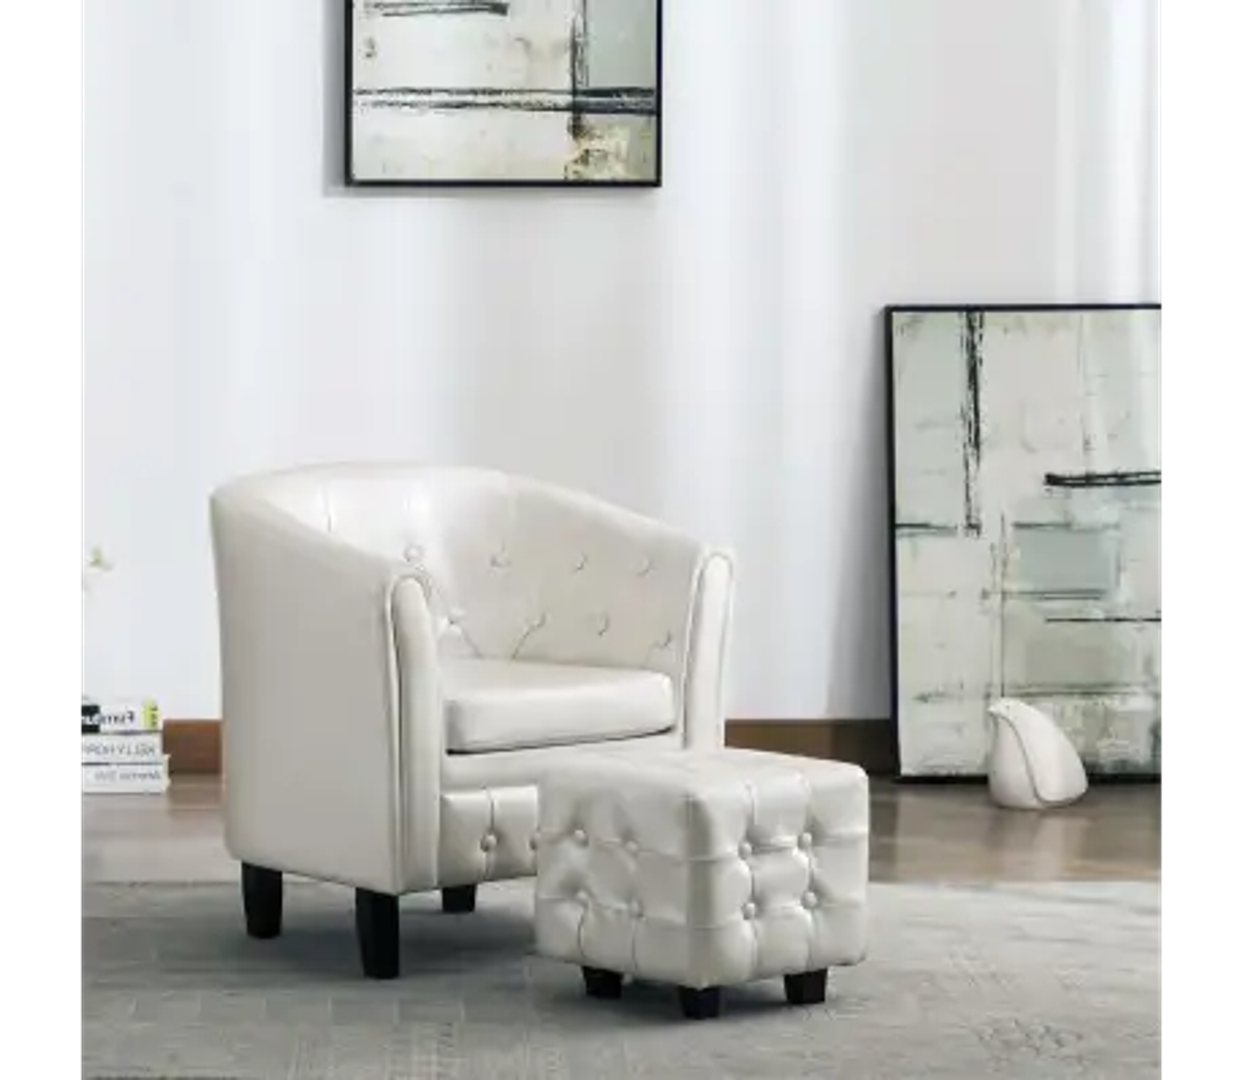 Fotelja s tabureom na sniženju košta 930 kuna, što je super prilika ako tražite atraktivan detalj za dnevni boravak